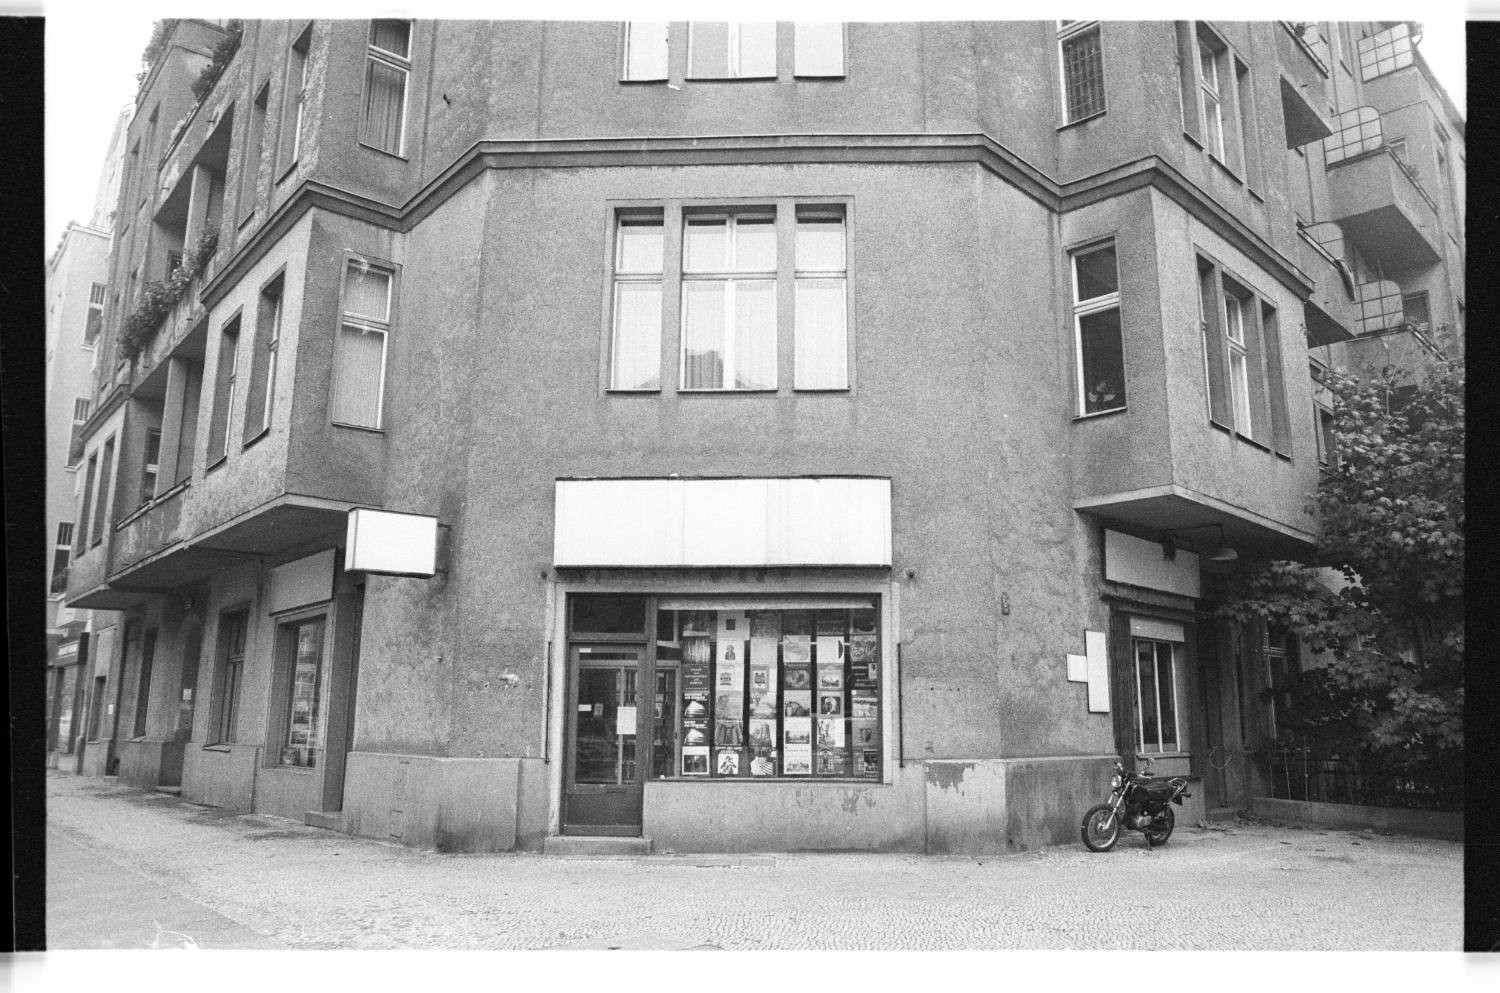 Kleinbildnegative: Eckhaus, Eisenacher Str. 38, 1982 (Museen Tempelhof-Schöneberg/Jürgen Henschel RR-F)